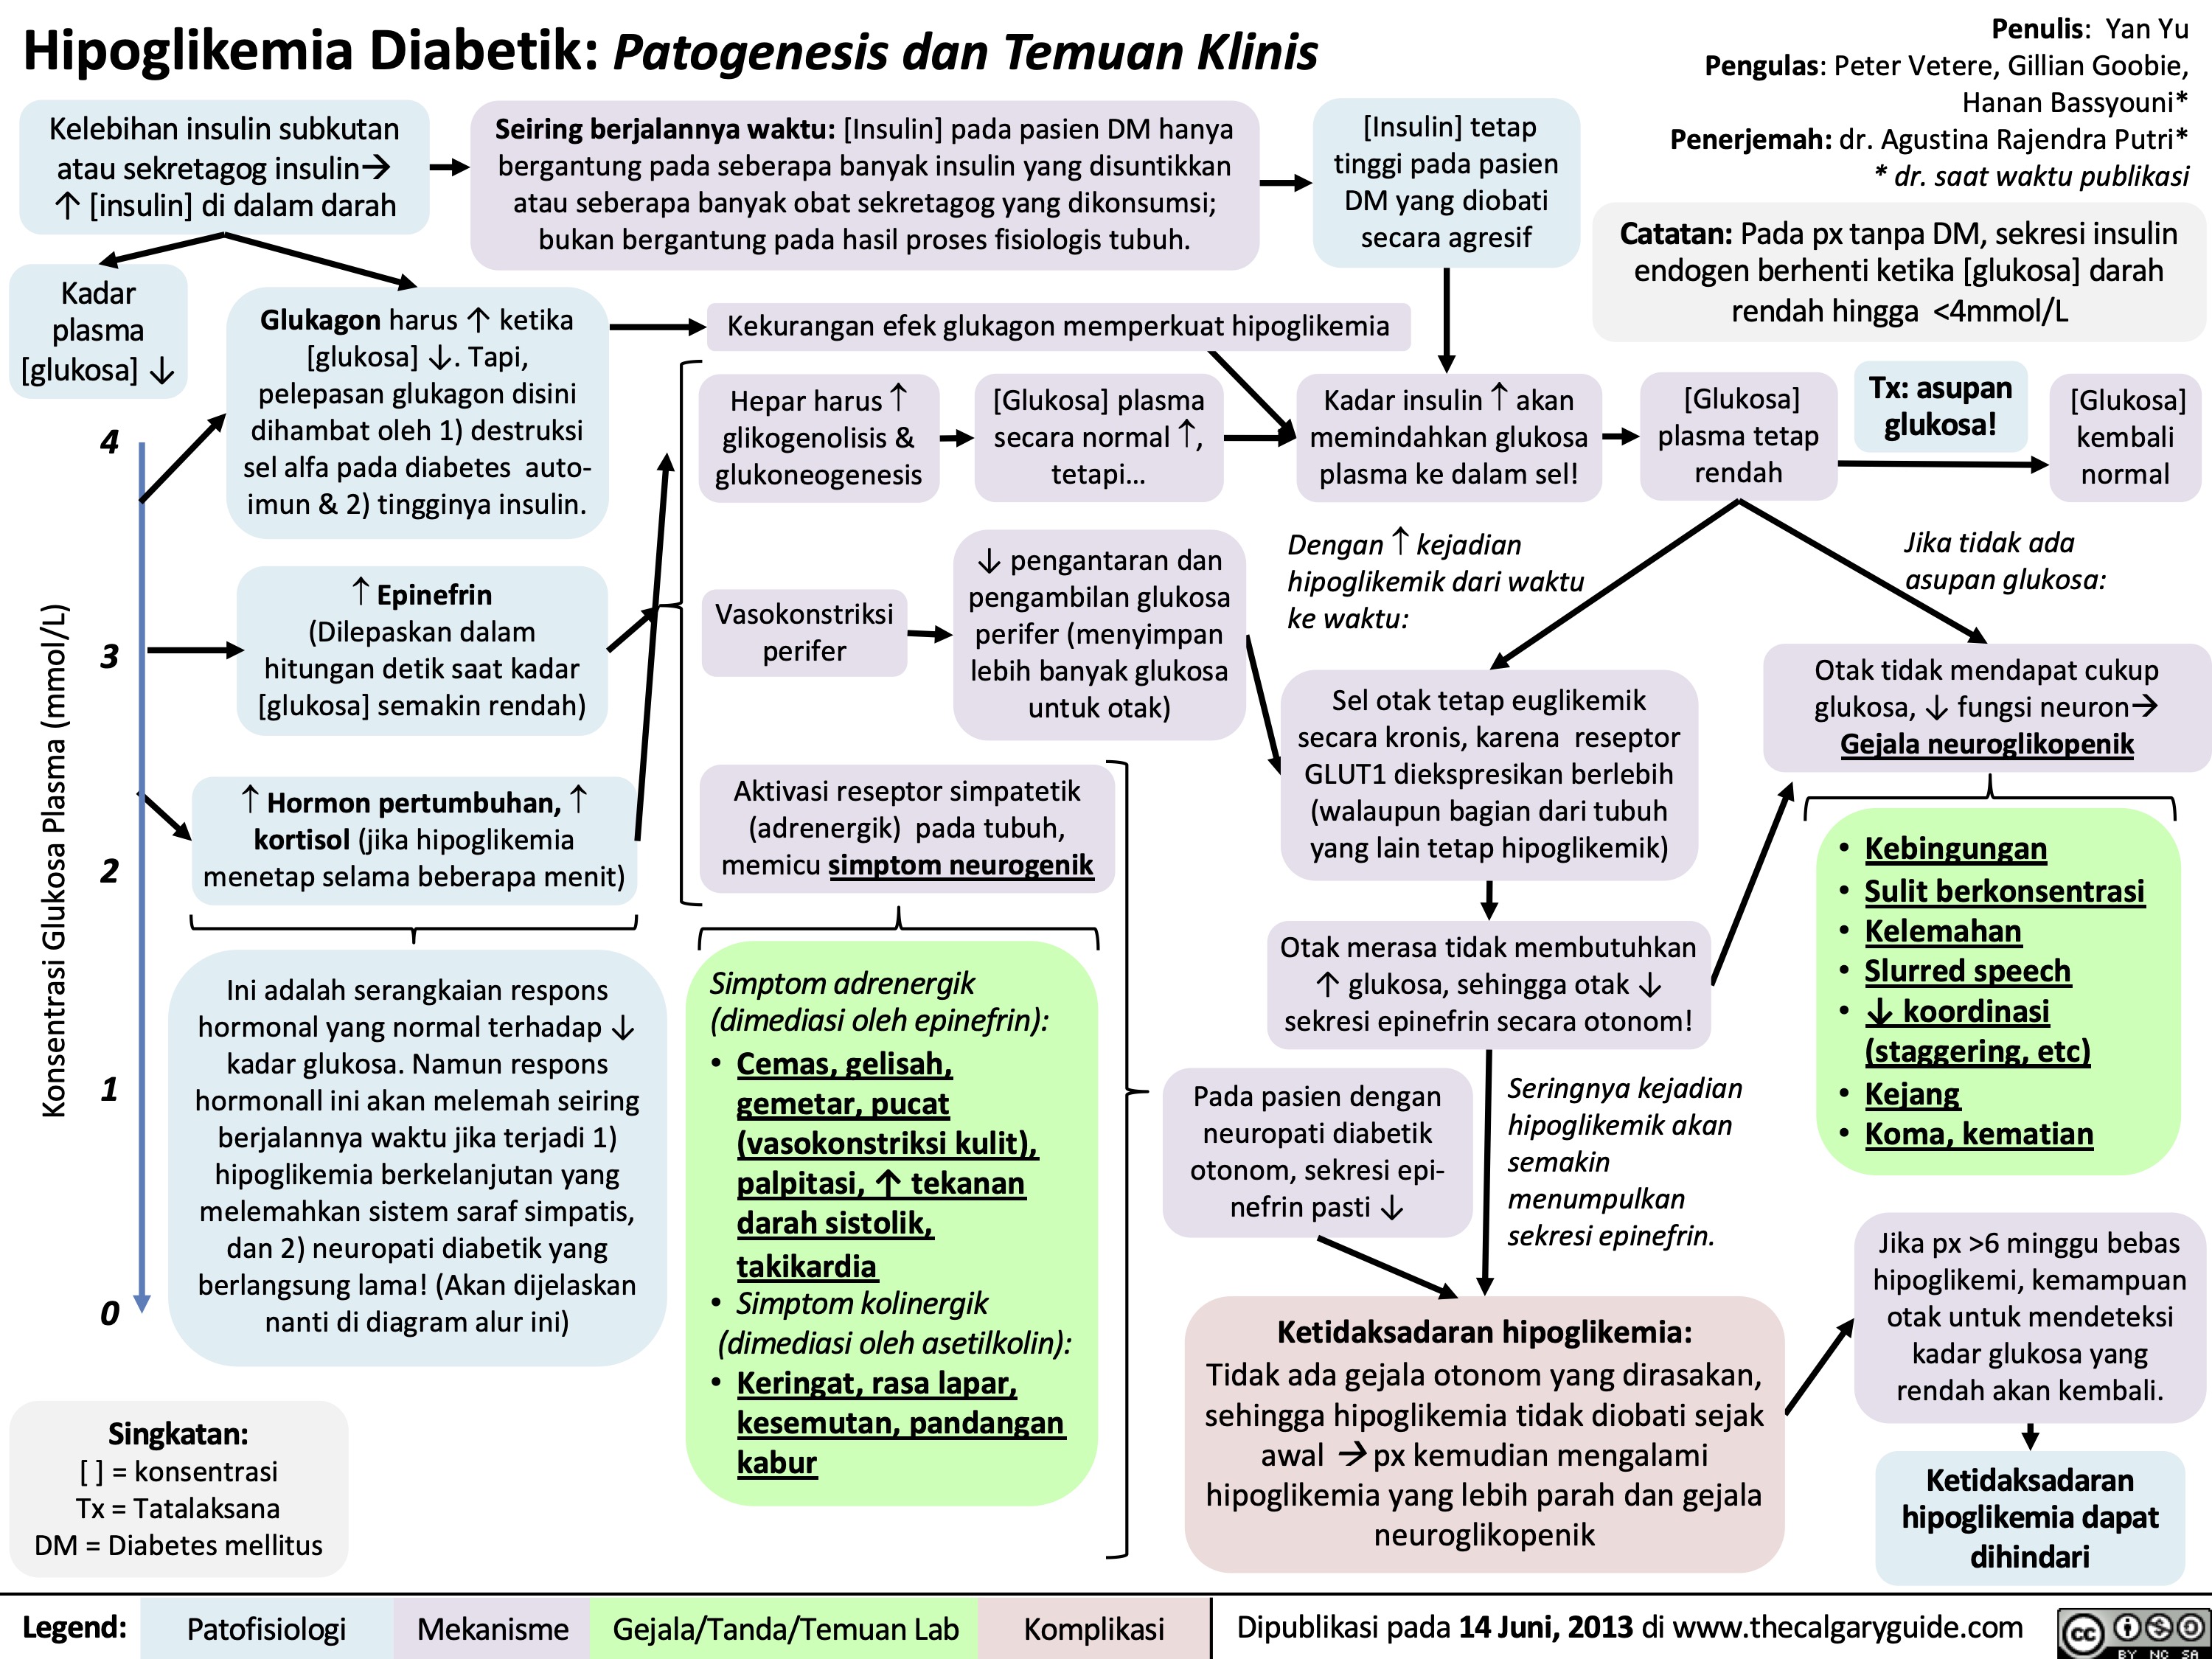 Hipoglikemia Diabetik: Patogenesis dan Temuan Klinis